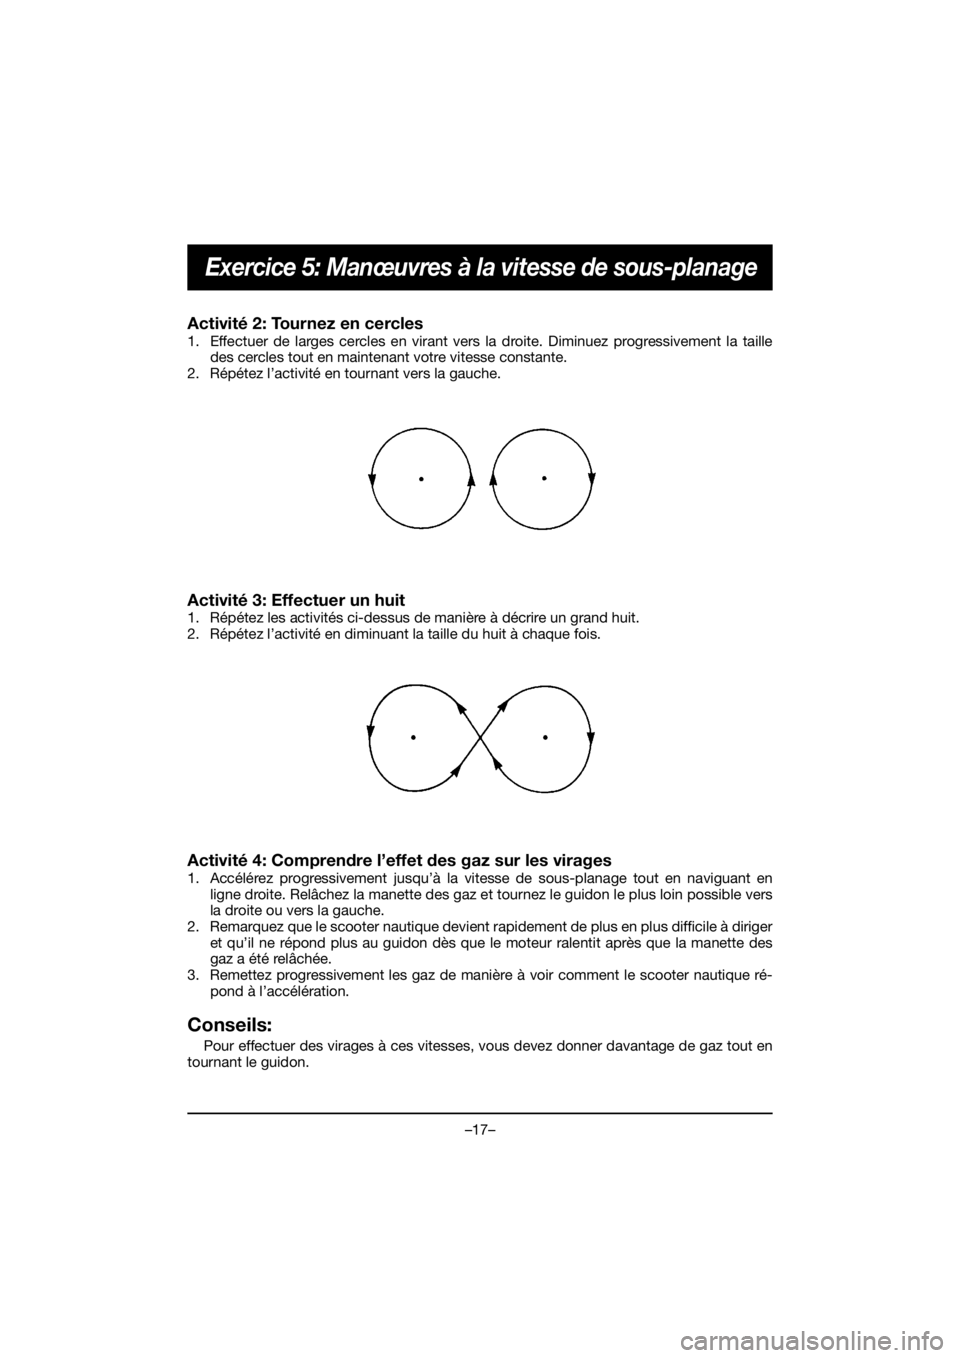 YAMAHA VX DELUXE 2020  Betriebsanleitungen (in German) –17–
Exercice 5: Manœuvres à la vitesse de sous-planage
Activité 2: Tournez en cercles 
1. Effectuer de larges cercles en virant vers la droite. Diminuez progressivement la taille
des cercles t